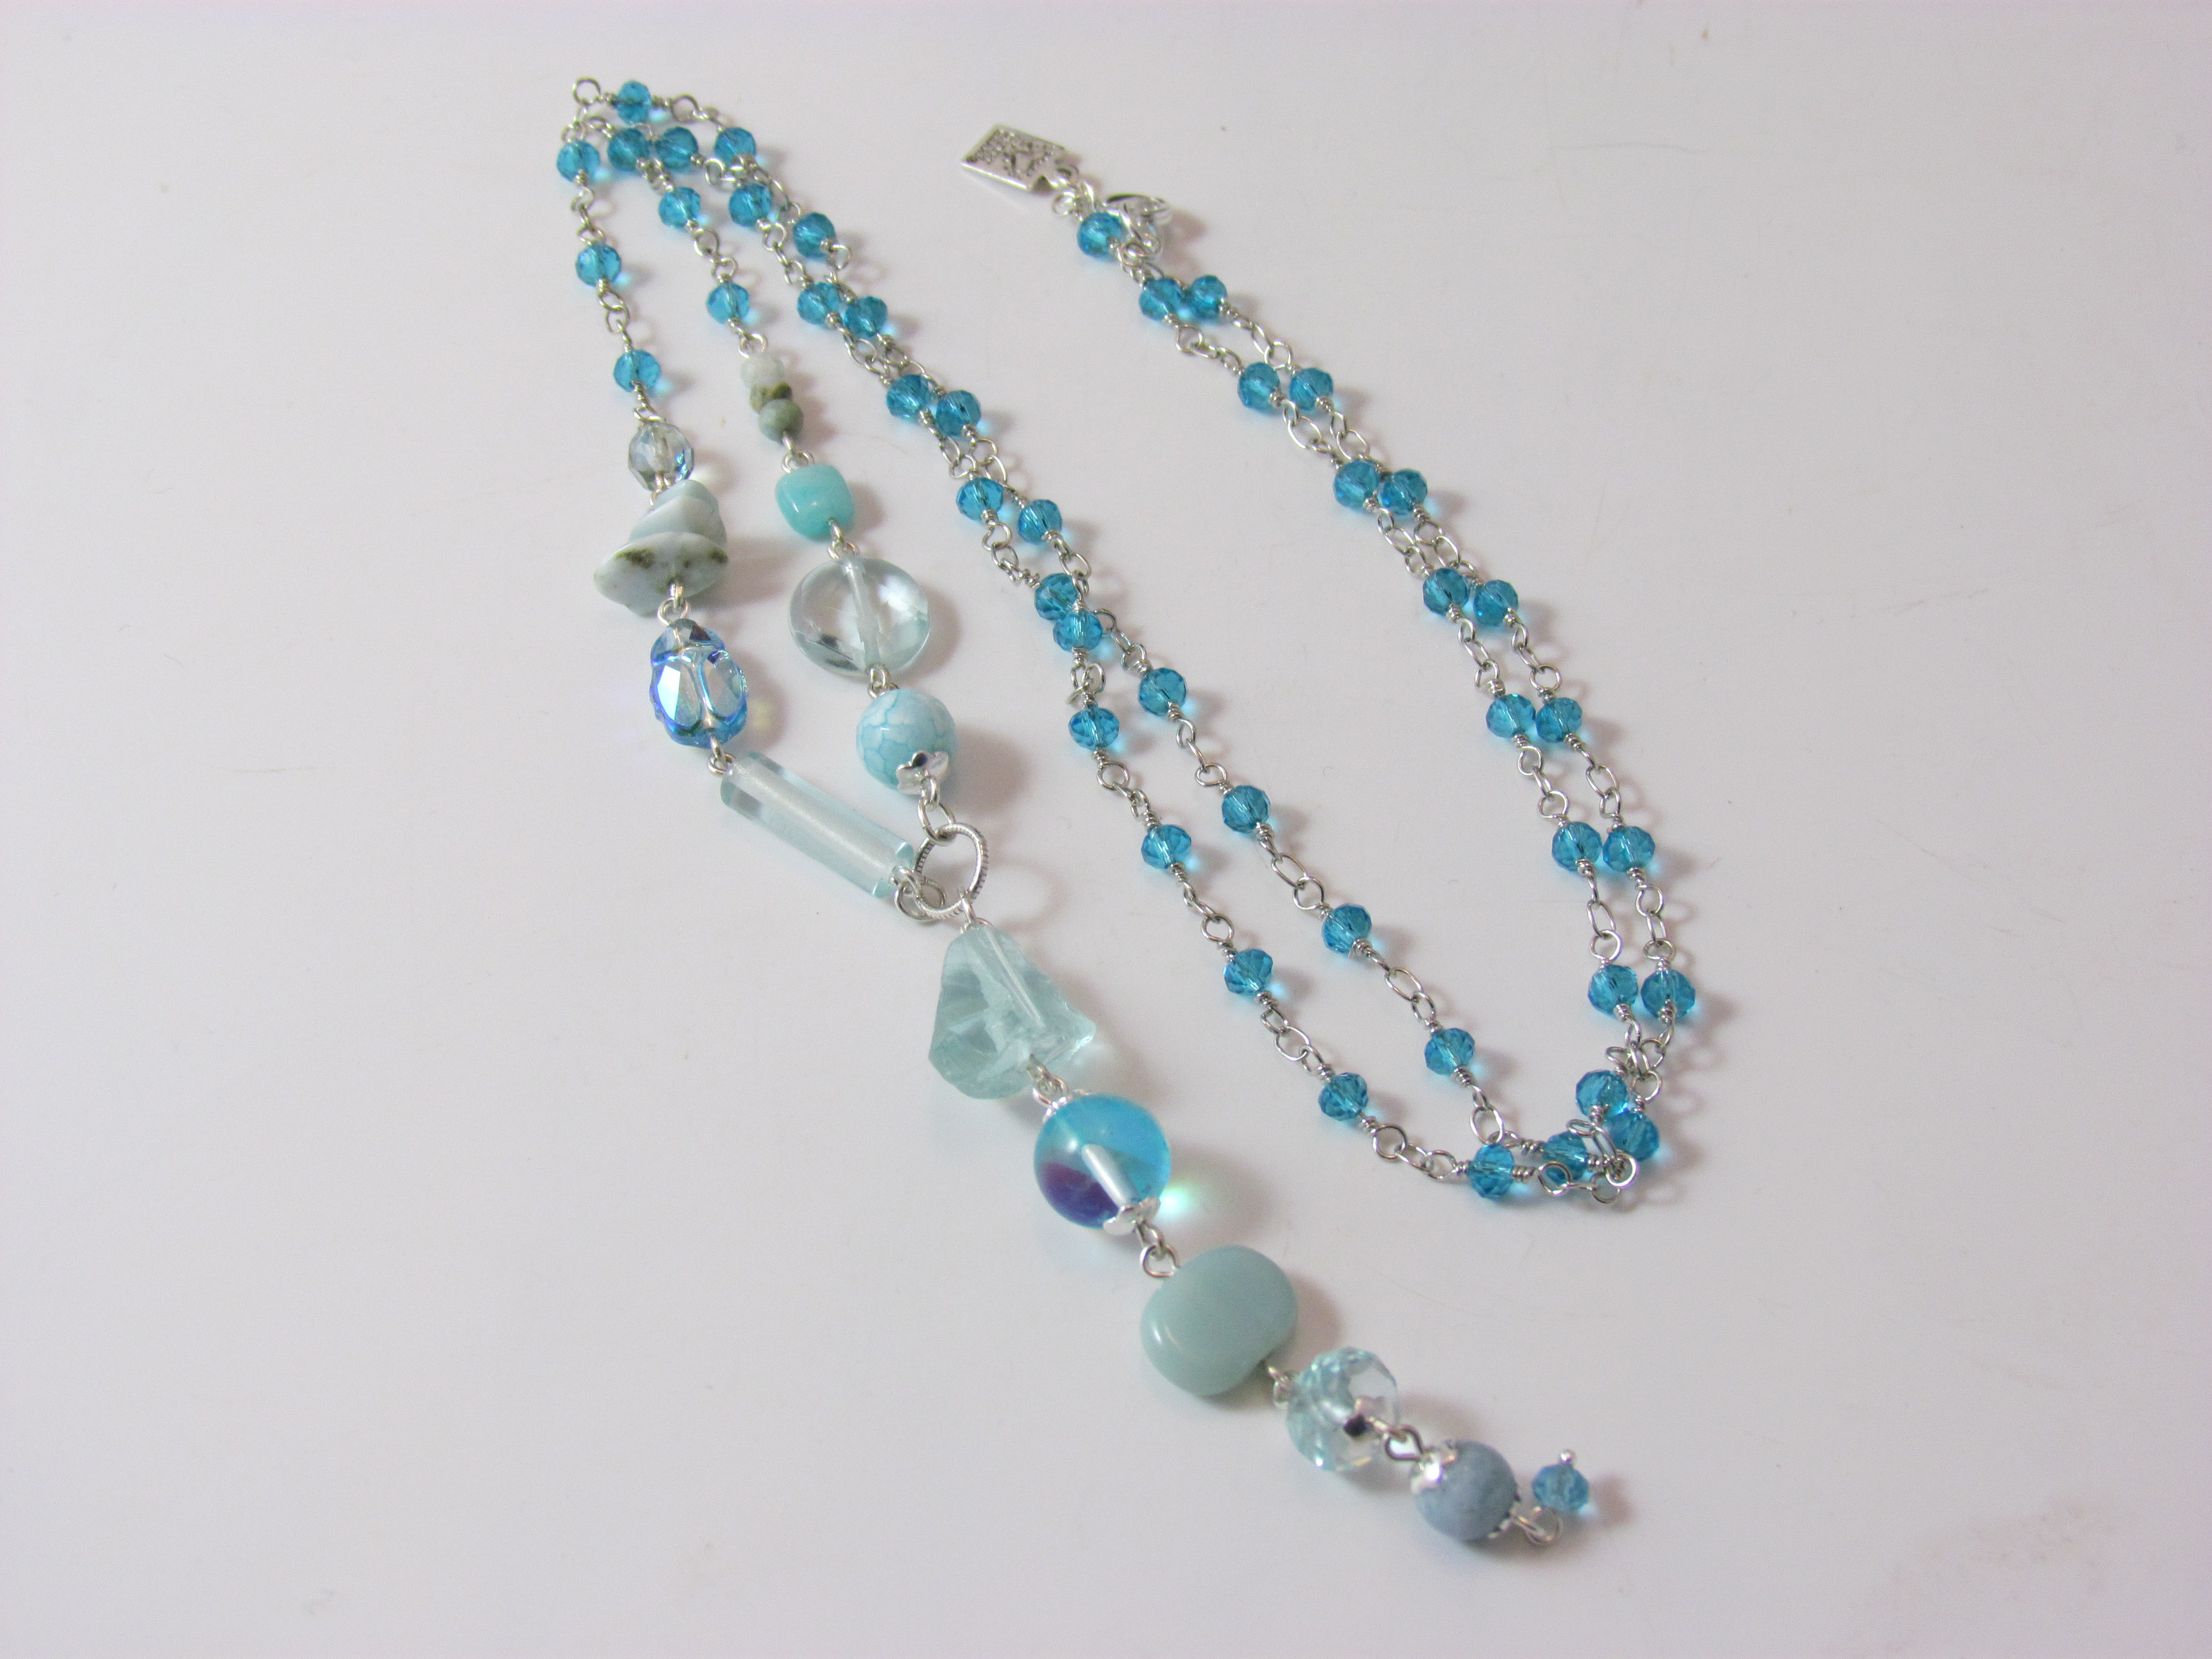 Desert Heart Rhapsody in Blue Necklace with Larimar, Quartz and Aquamarine